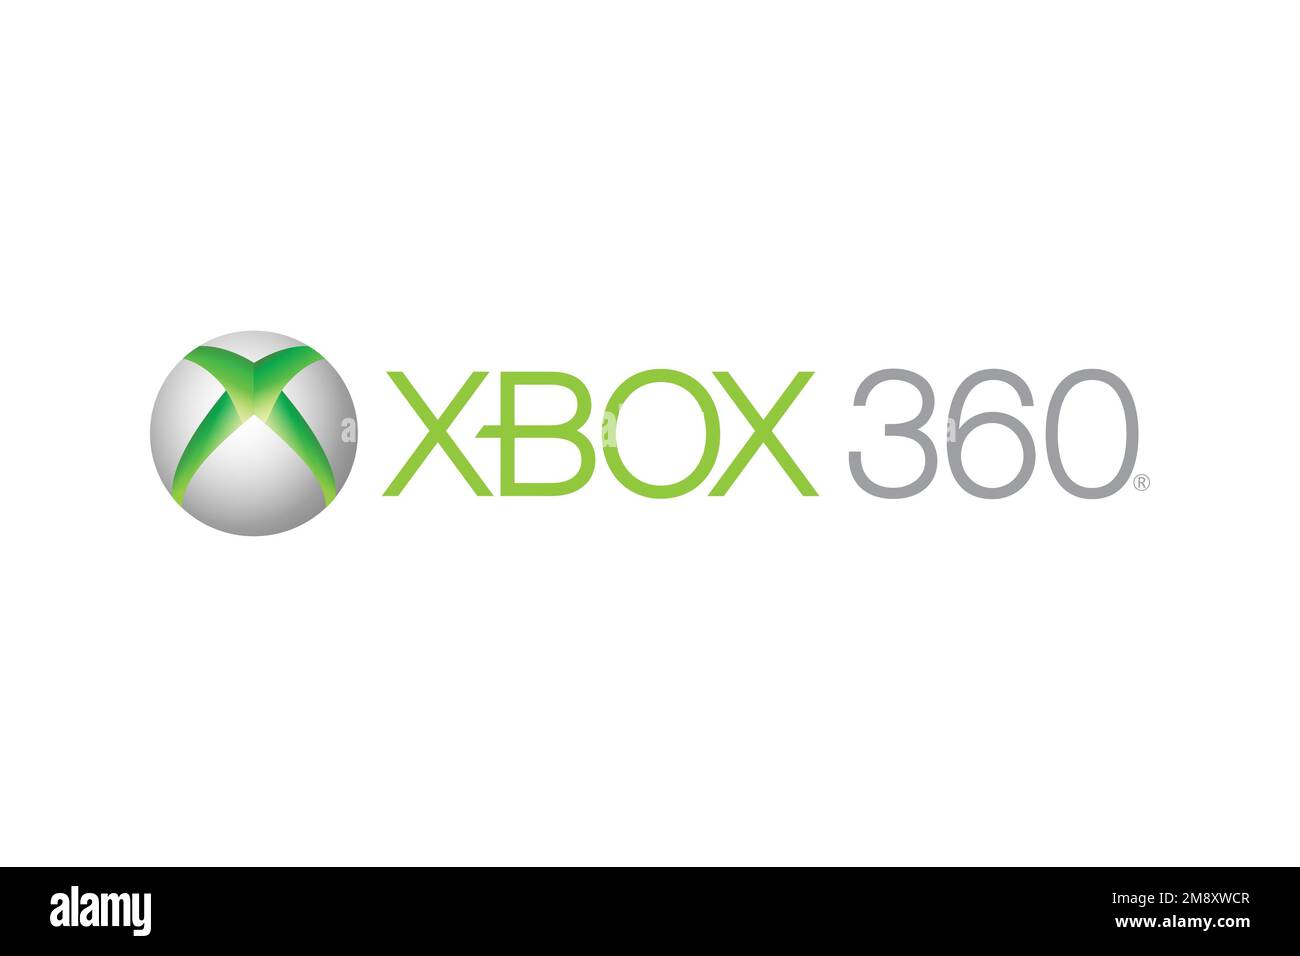 Xbox 360 logo Banque d'images détourées - Alamy